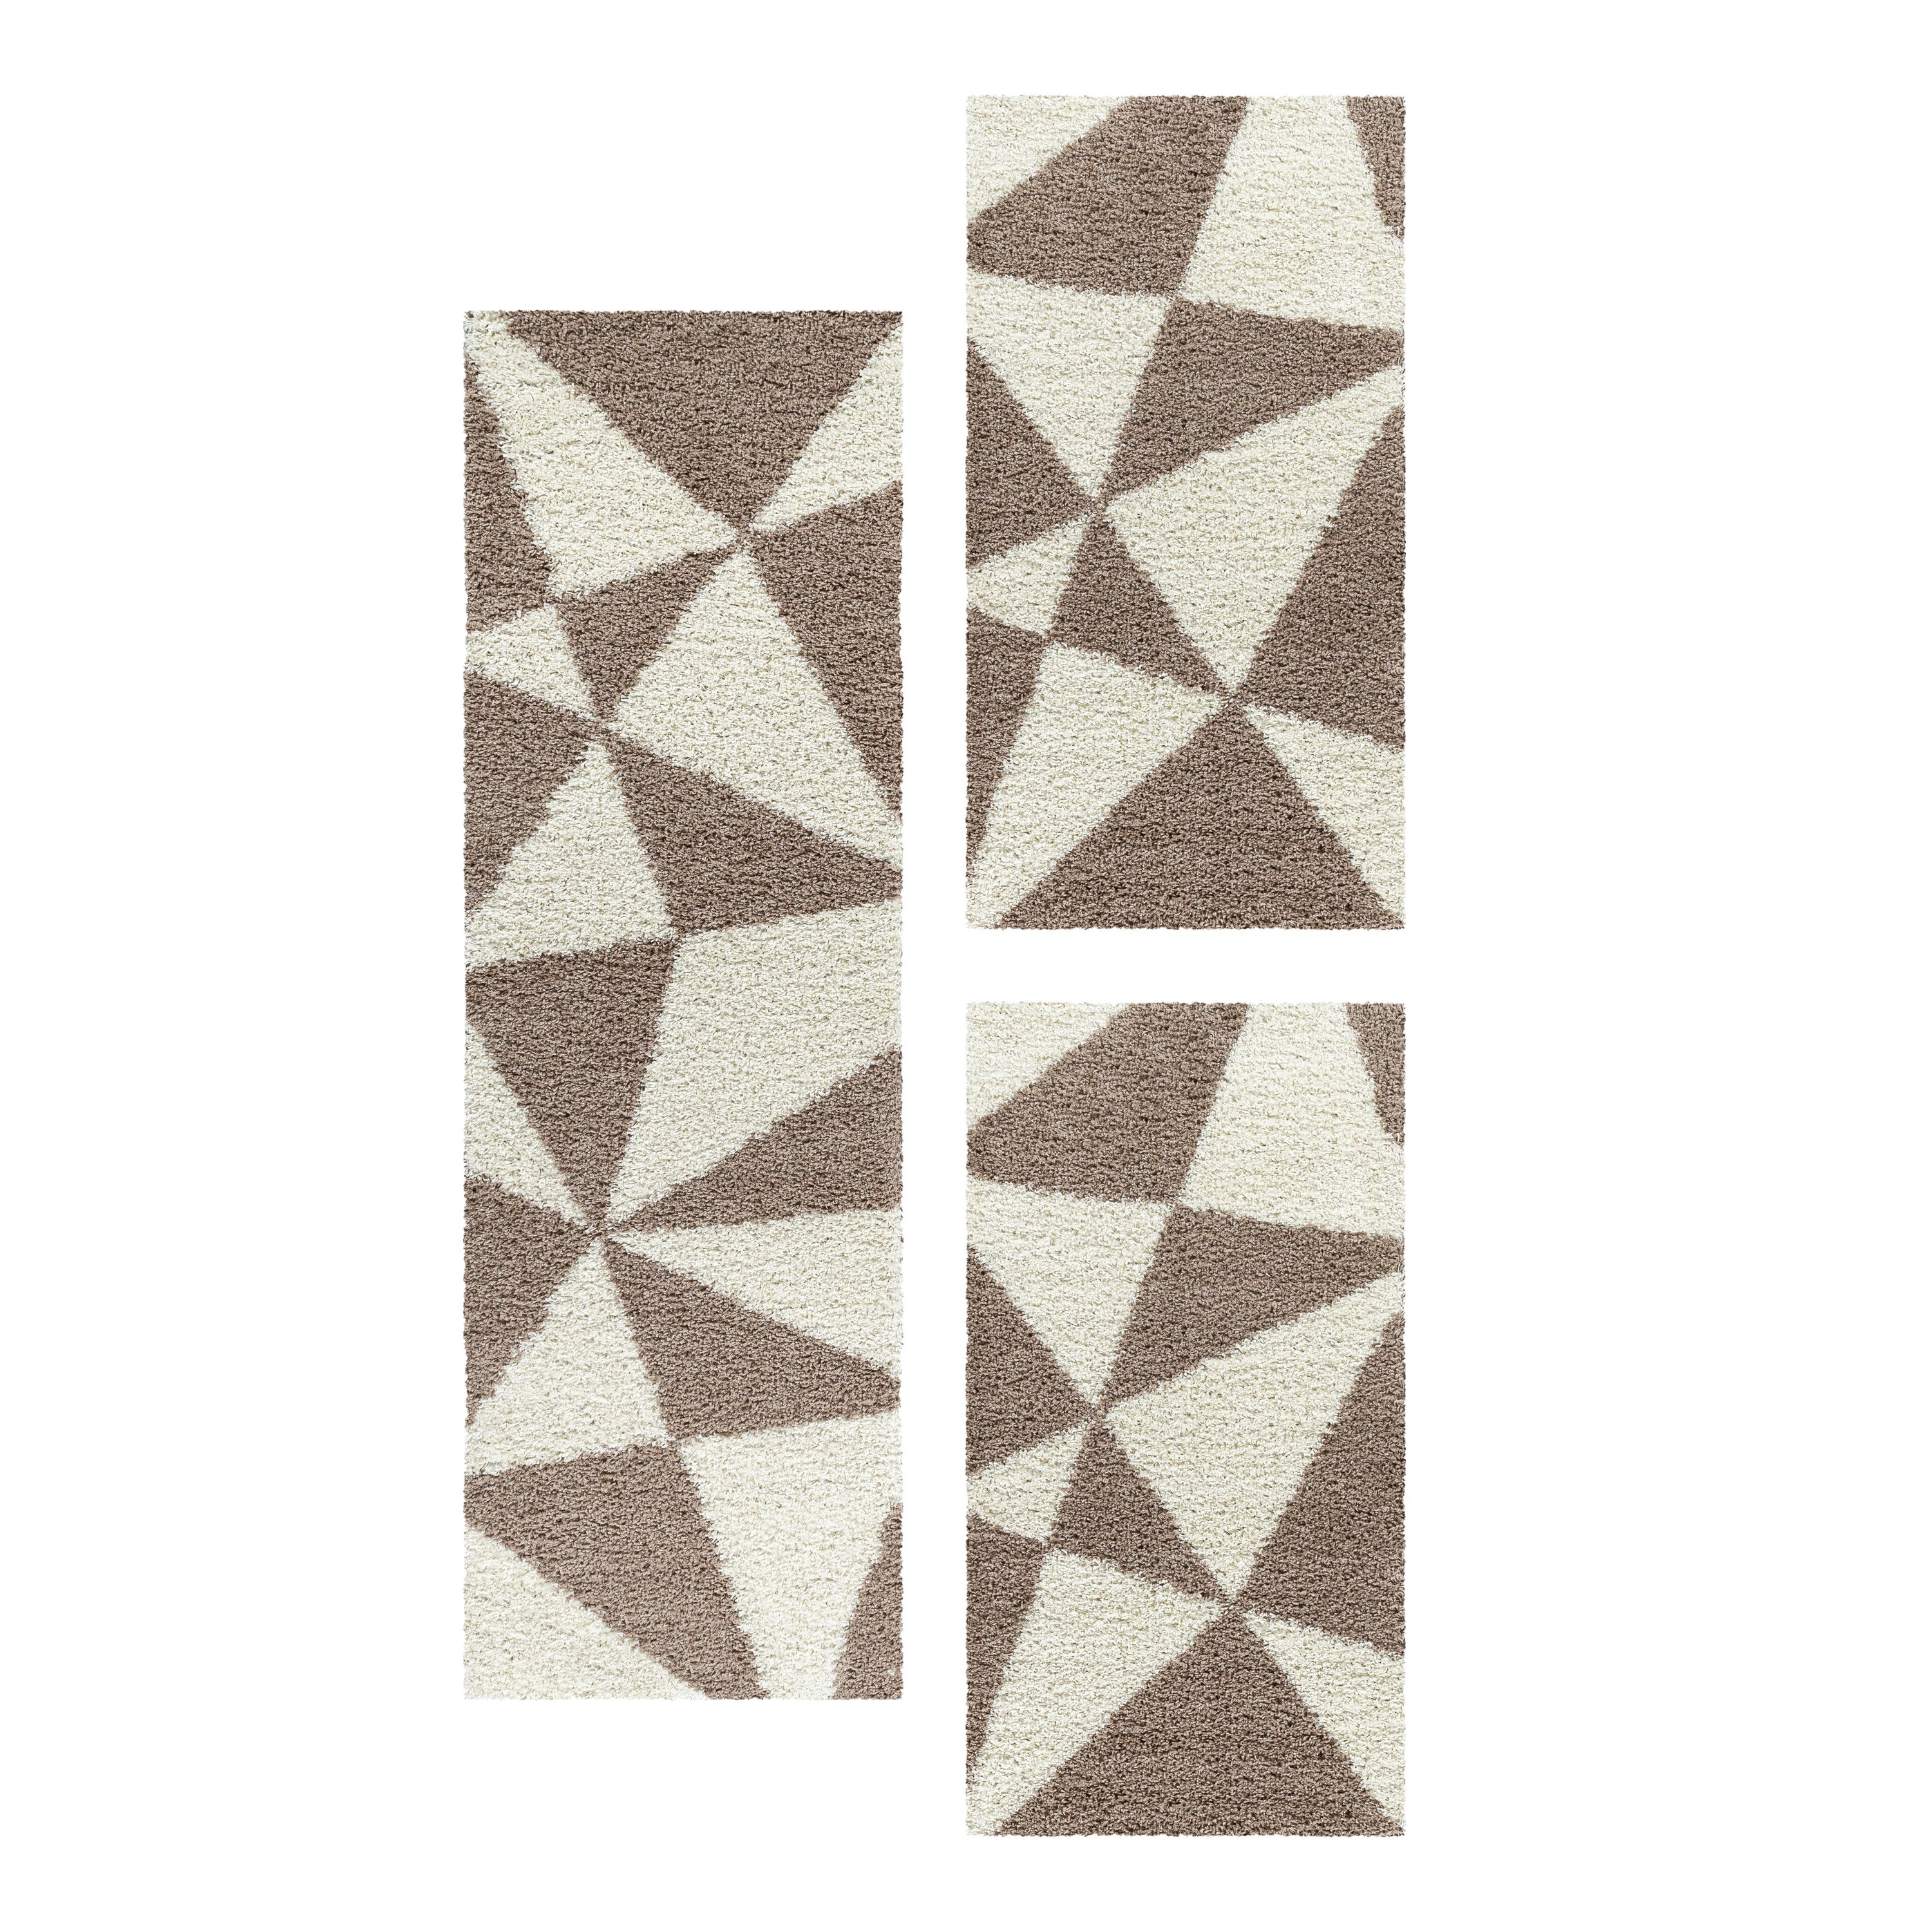 Design Teppich Set Shaggy Bettumrandung Läufer Set Muster Dreiecke 3 Teile Beige